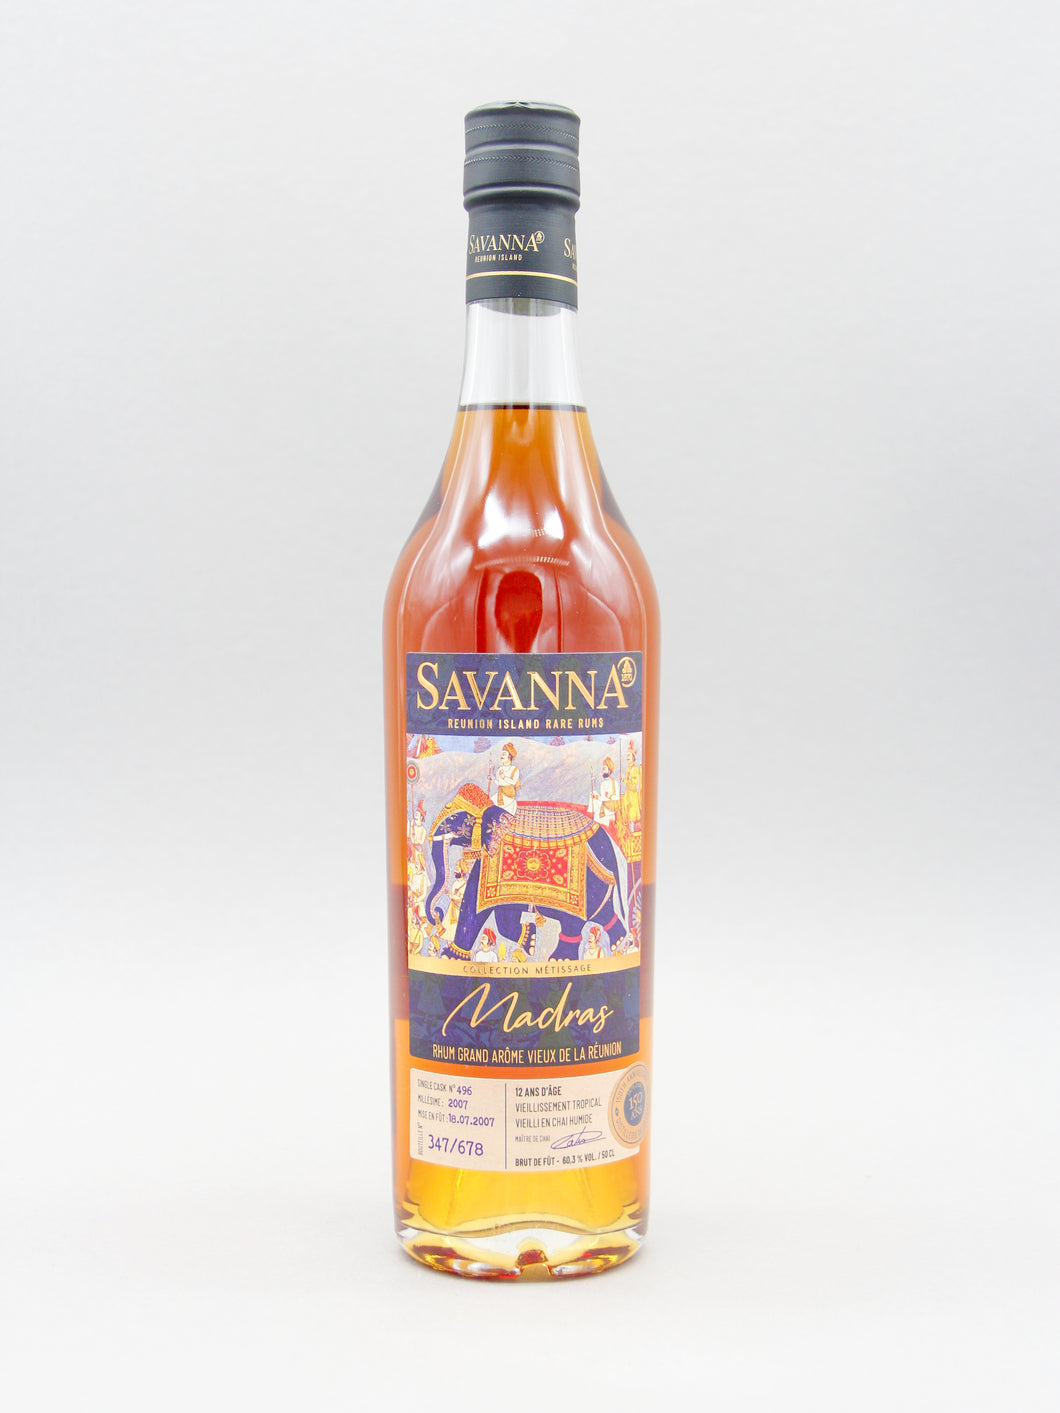 Savanna Métissage Single Cask No. 496 Madras, 2007, Rhum Reunion (60.3%, 50cl)